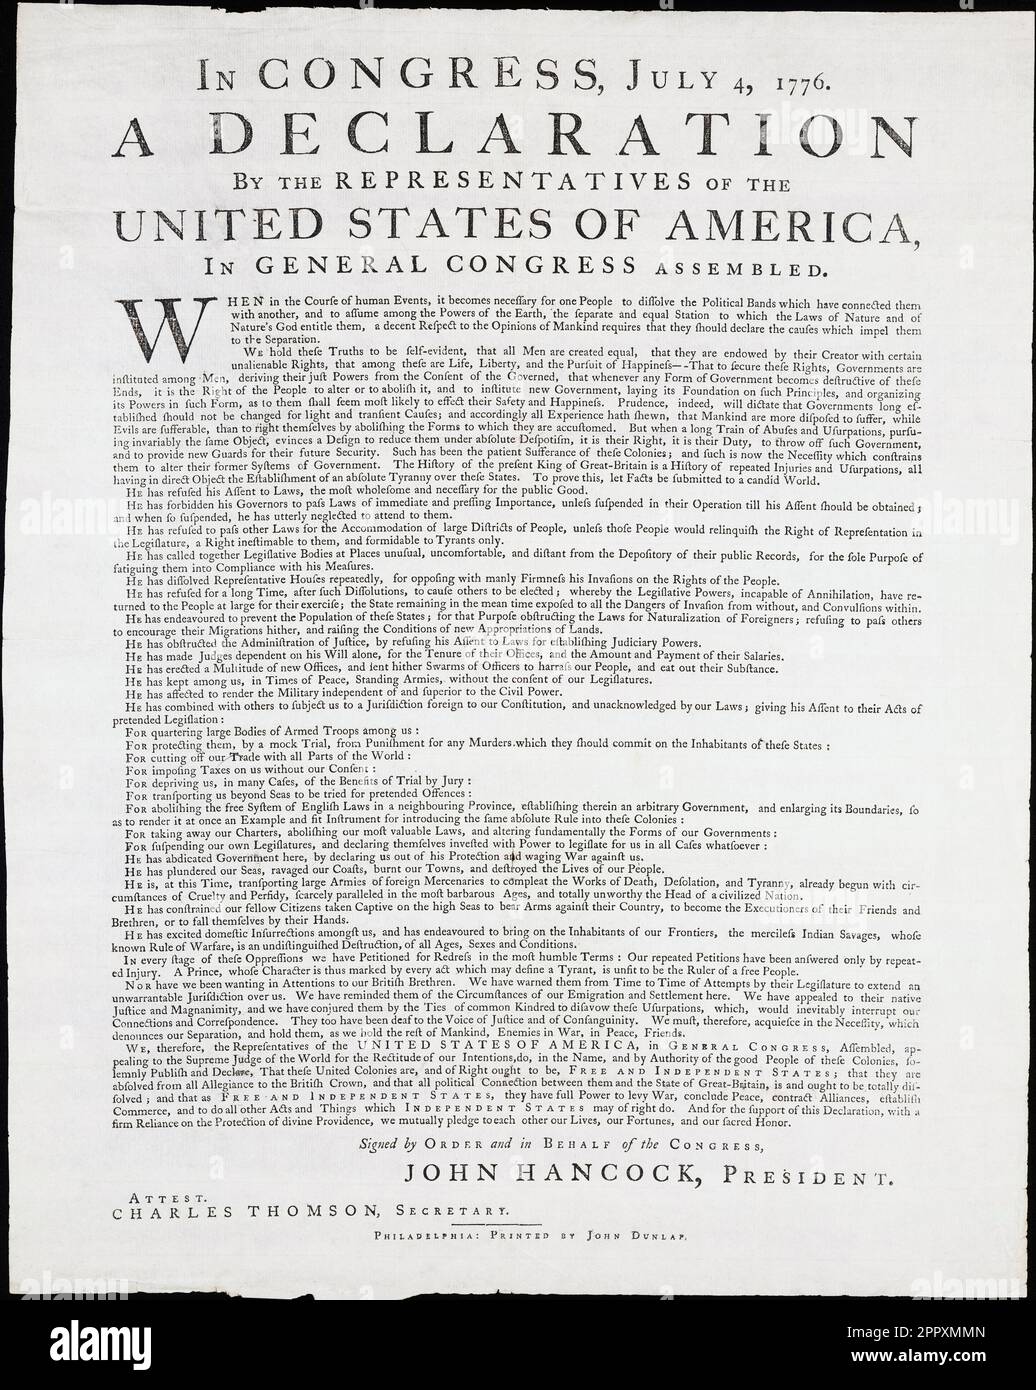 Die Unabhängigkeitserklärung der Vereinigten Staaten. Dies ist eine Reproduktion einer Kopie, die in unbekannten Nummern produziert wurde und als Dunlap Broadside bekannt ist. Es ist nach dem Drucker, dem irischen Immigranten John Dunlap, benannt, der die Deklaration in der Nacht, in der sie dem zweiten Kontinentalkongress am 4. Juli 1776 vorgelegt wurde, mit Schreibmaschine und Druck druckte. Stockfoto